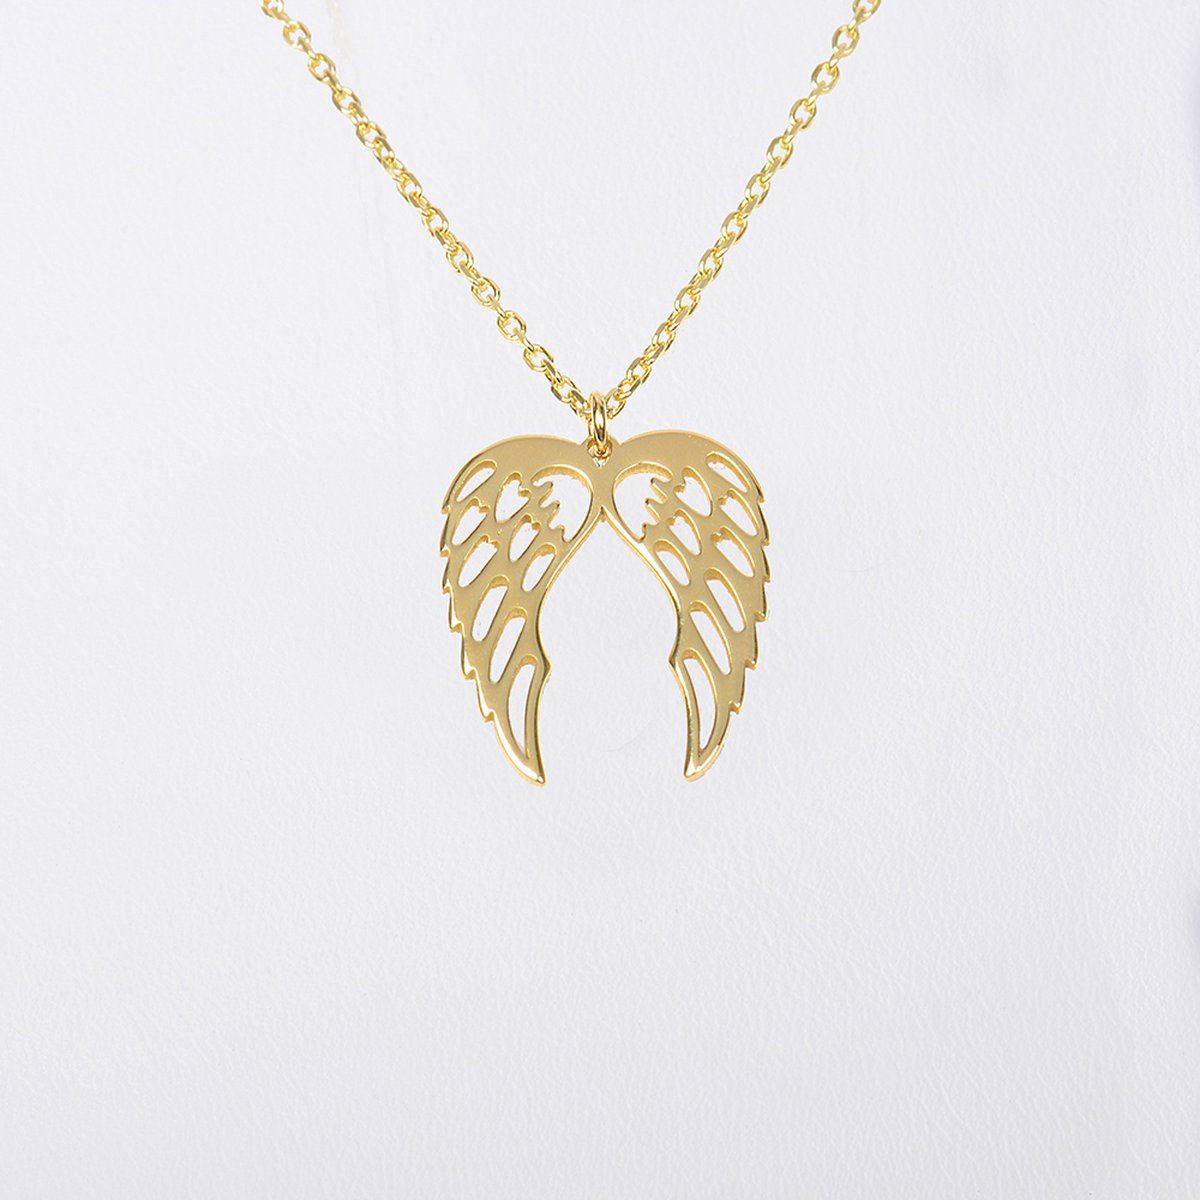 MeYuKu- Sieraden- 14 karaat gouden ketting- Engel vleugels